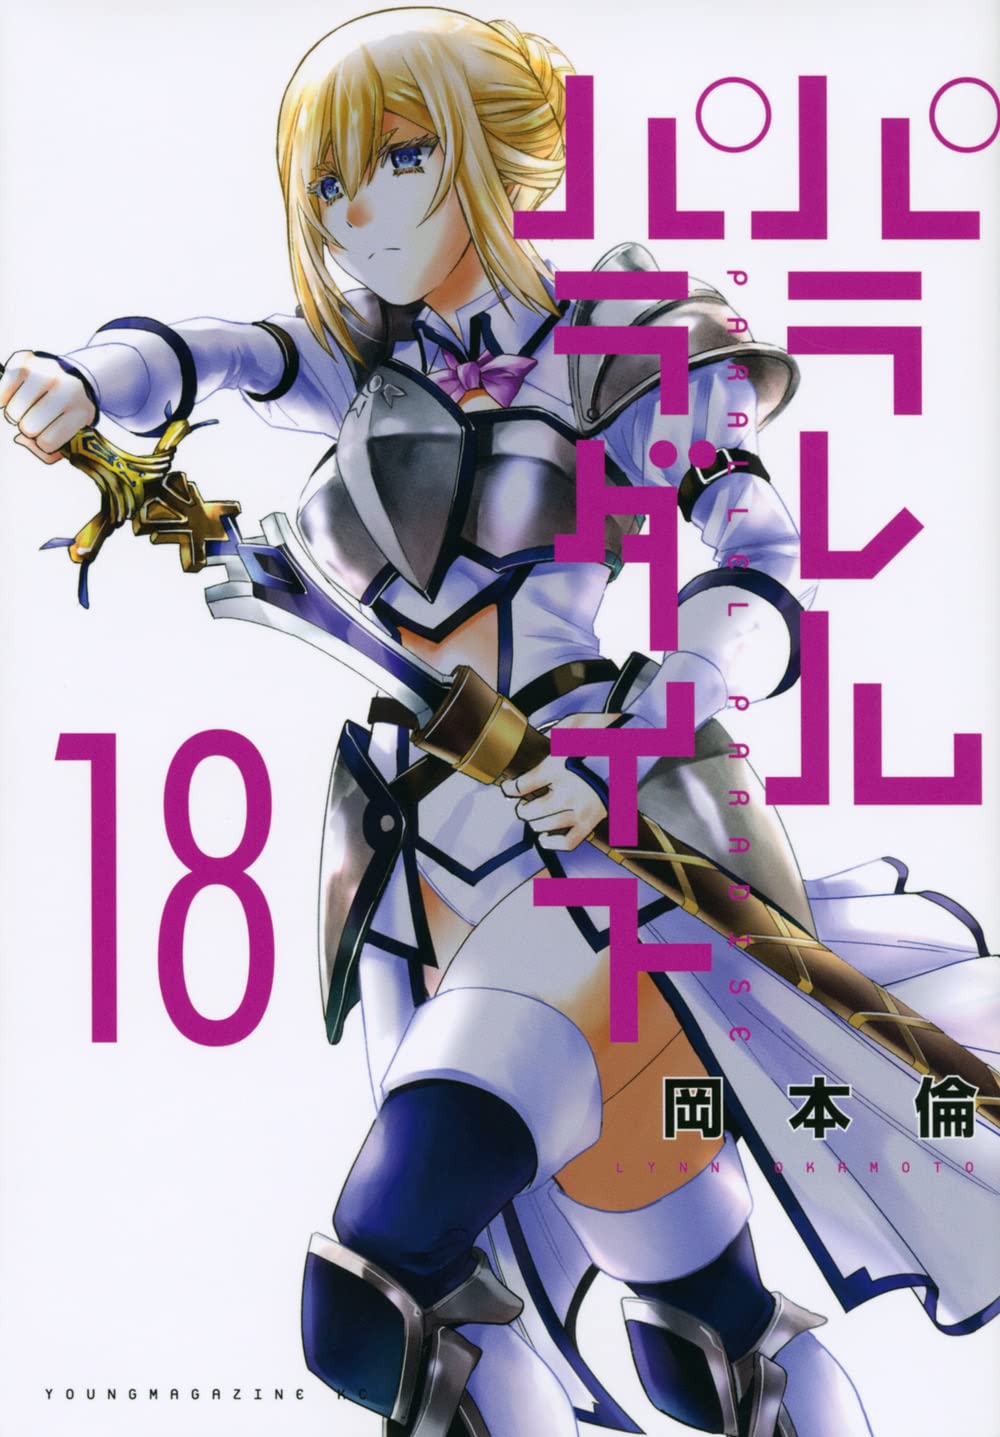 Otakus Brasil 🍥 on X: Será lançado no Japão um volume especial para o  mangá Boku no Hero Academia. Este lançamento se chamará Vol. World Heroes  e será entregue para as pessoas